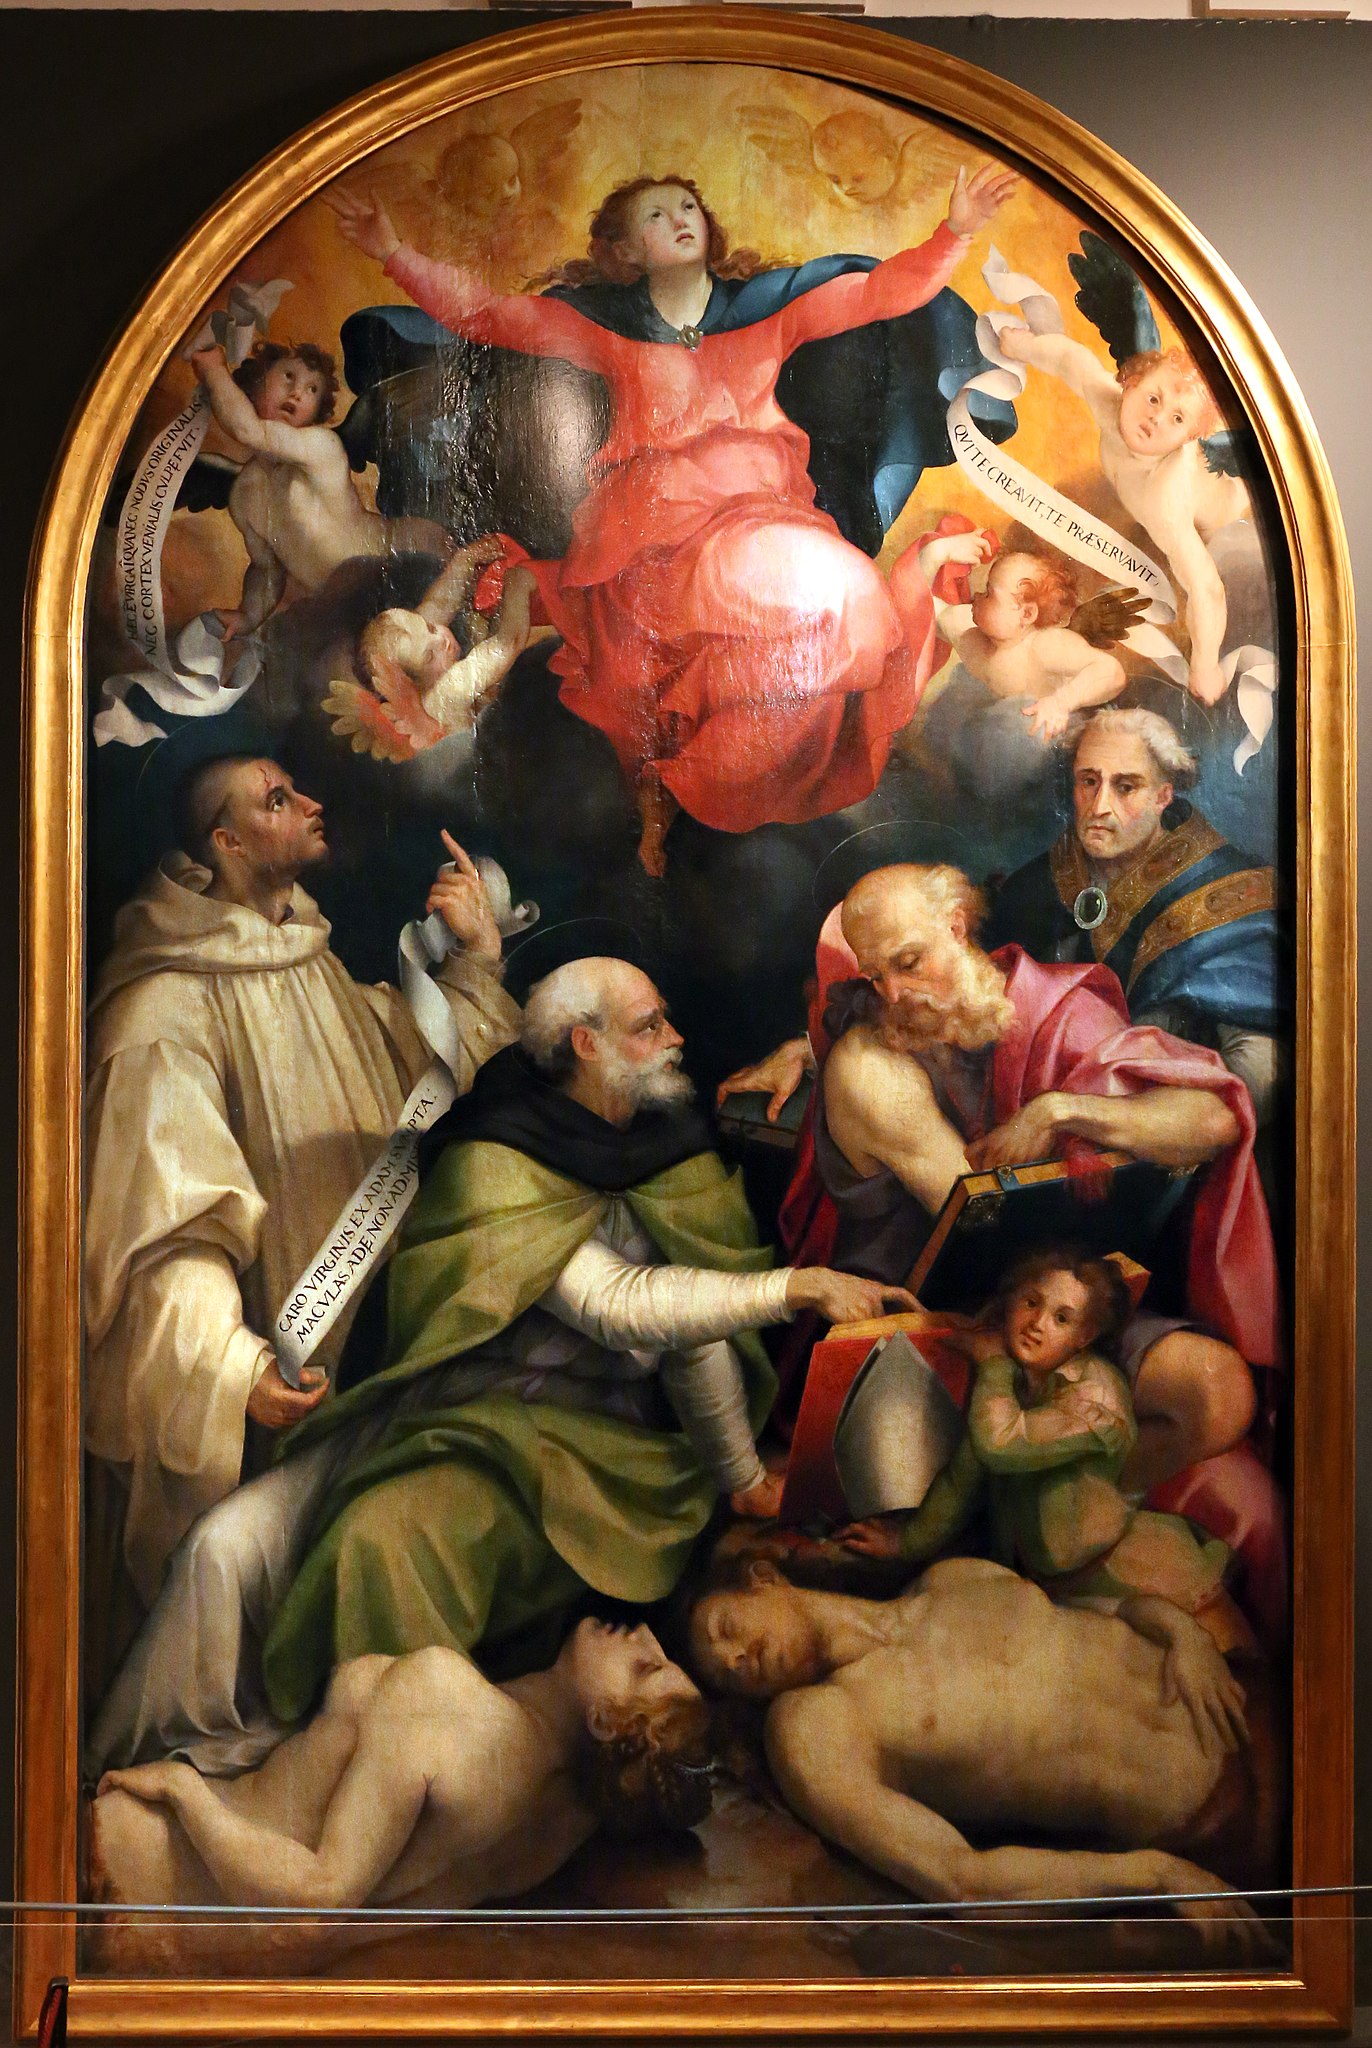 Carlo_portelli,_disputa_sull'immacolata_concezione,_1555_(Museo di Santa Croce florence